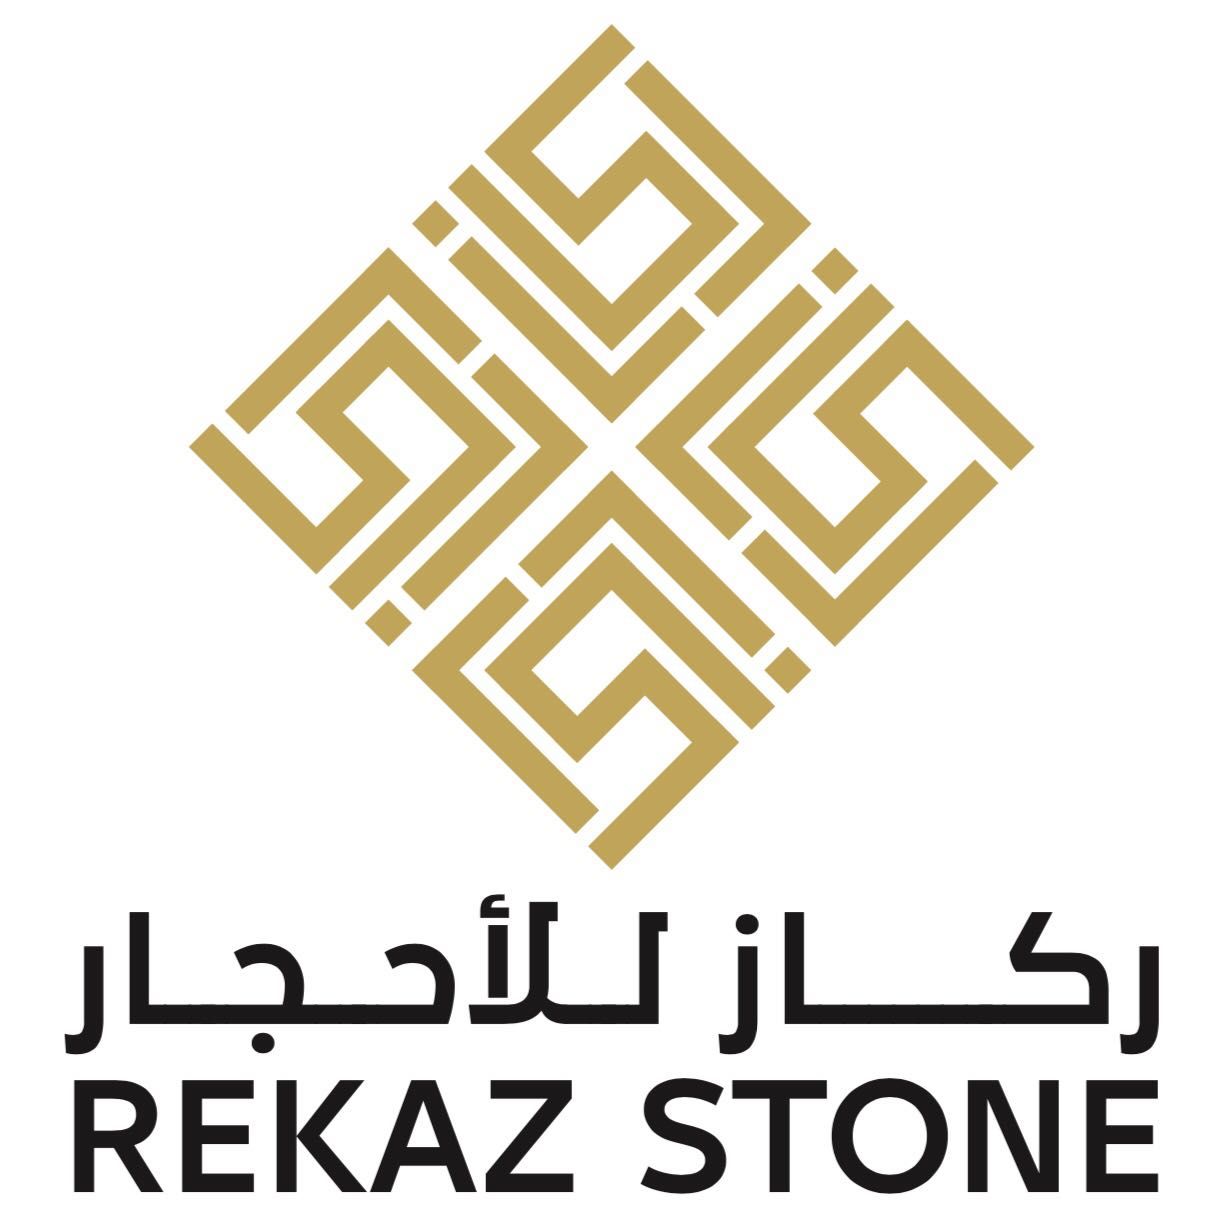 Rekaz Stone